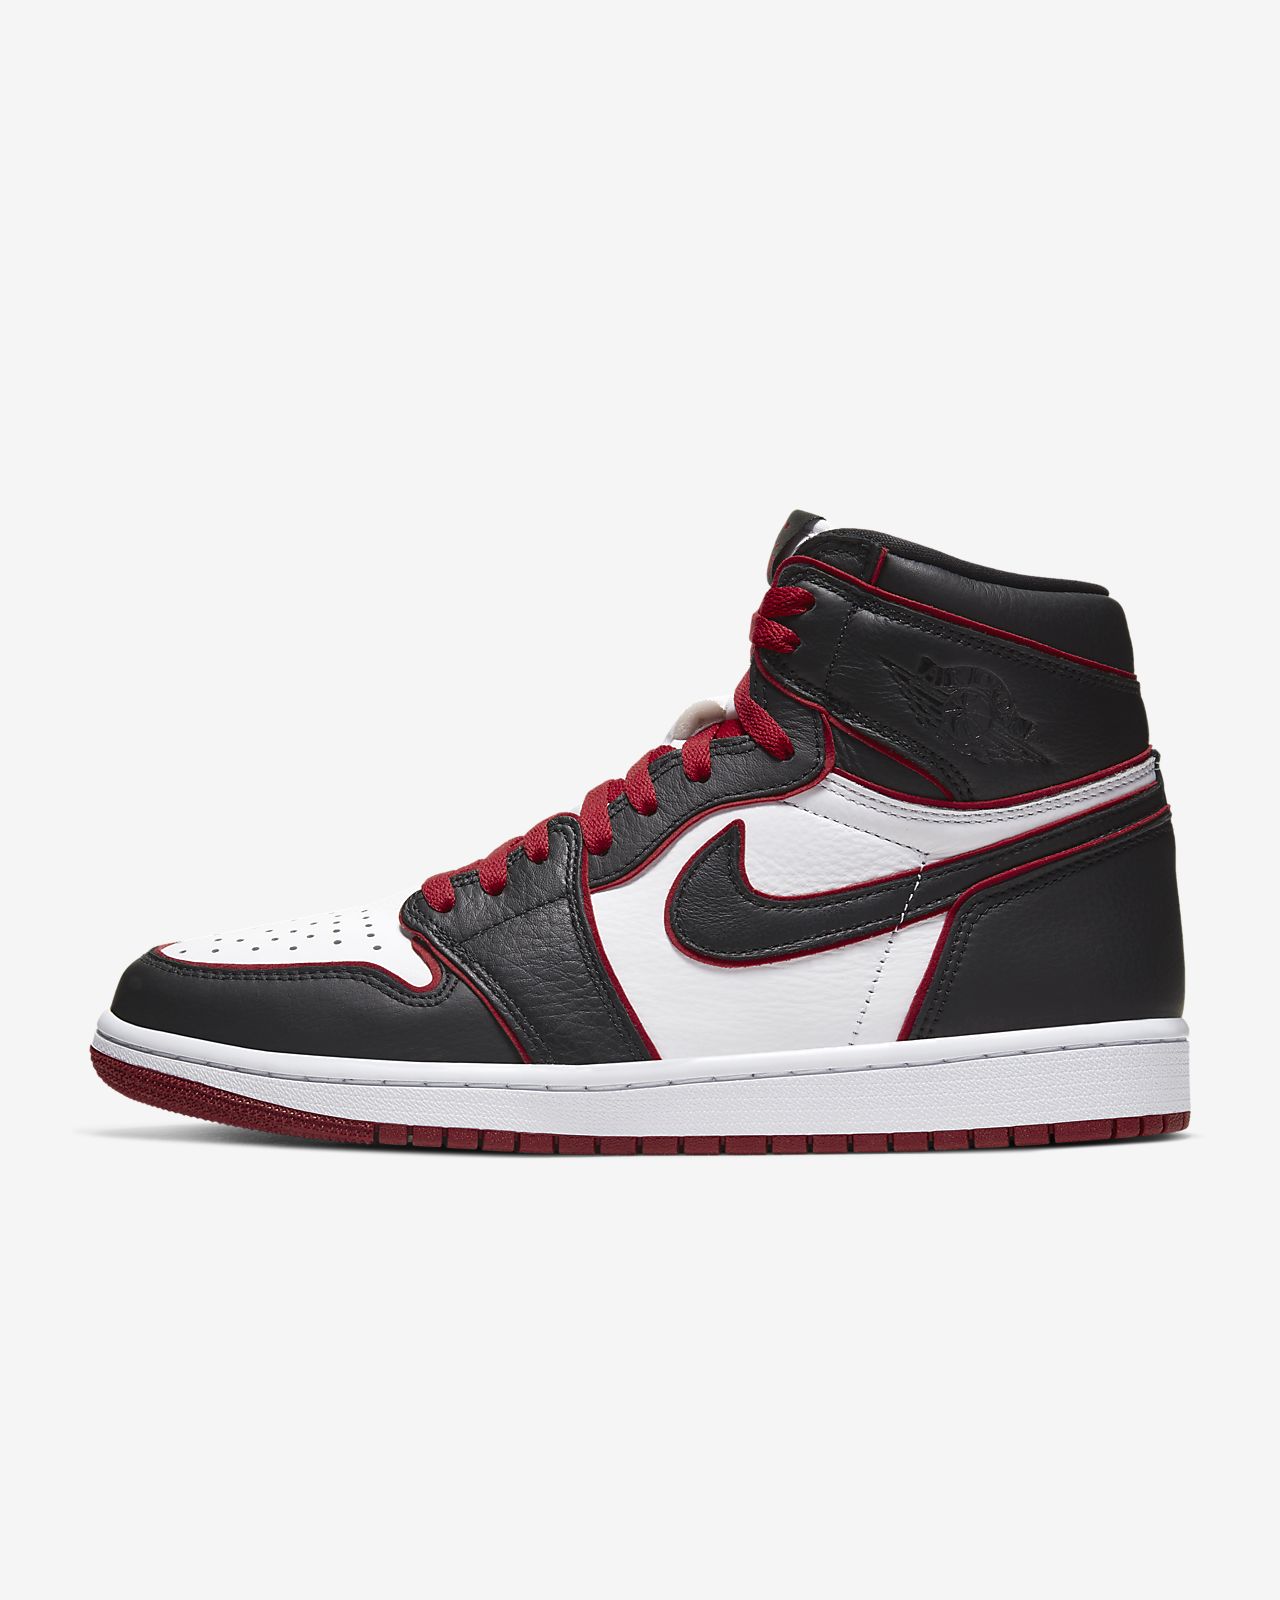 Air Jordan 1 Retro High Og Shoe Nike Com Air Jordans Jordan 1 Retro High Jordan 1